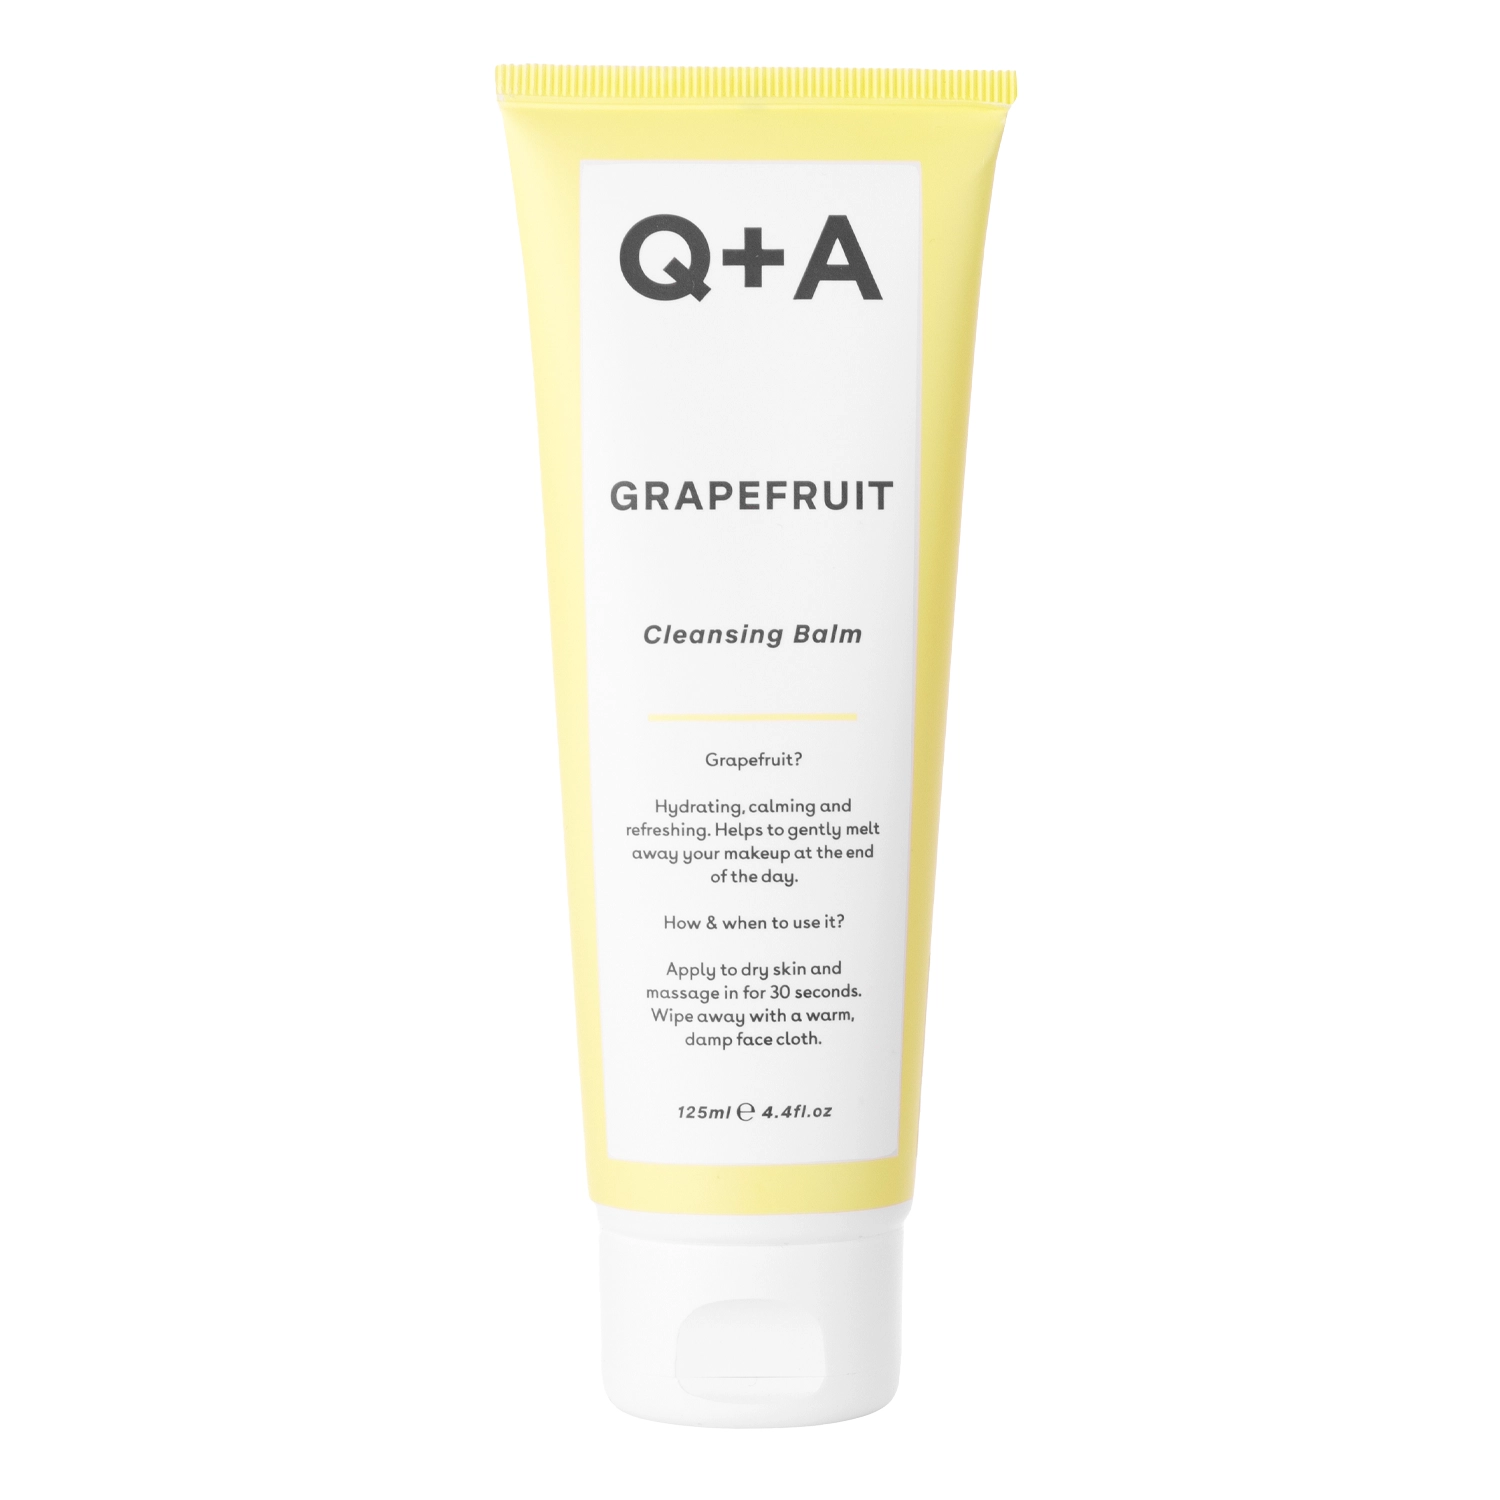 Q+A - Grapefruit - Cleansing Balm - Feuchtigkeitsspendendes, antioxidatives Gesichtsreinigungsbalsam mit Grapefruit- 125ml